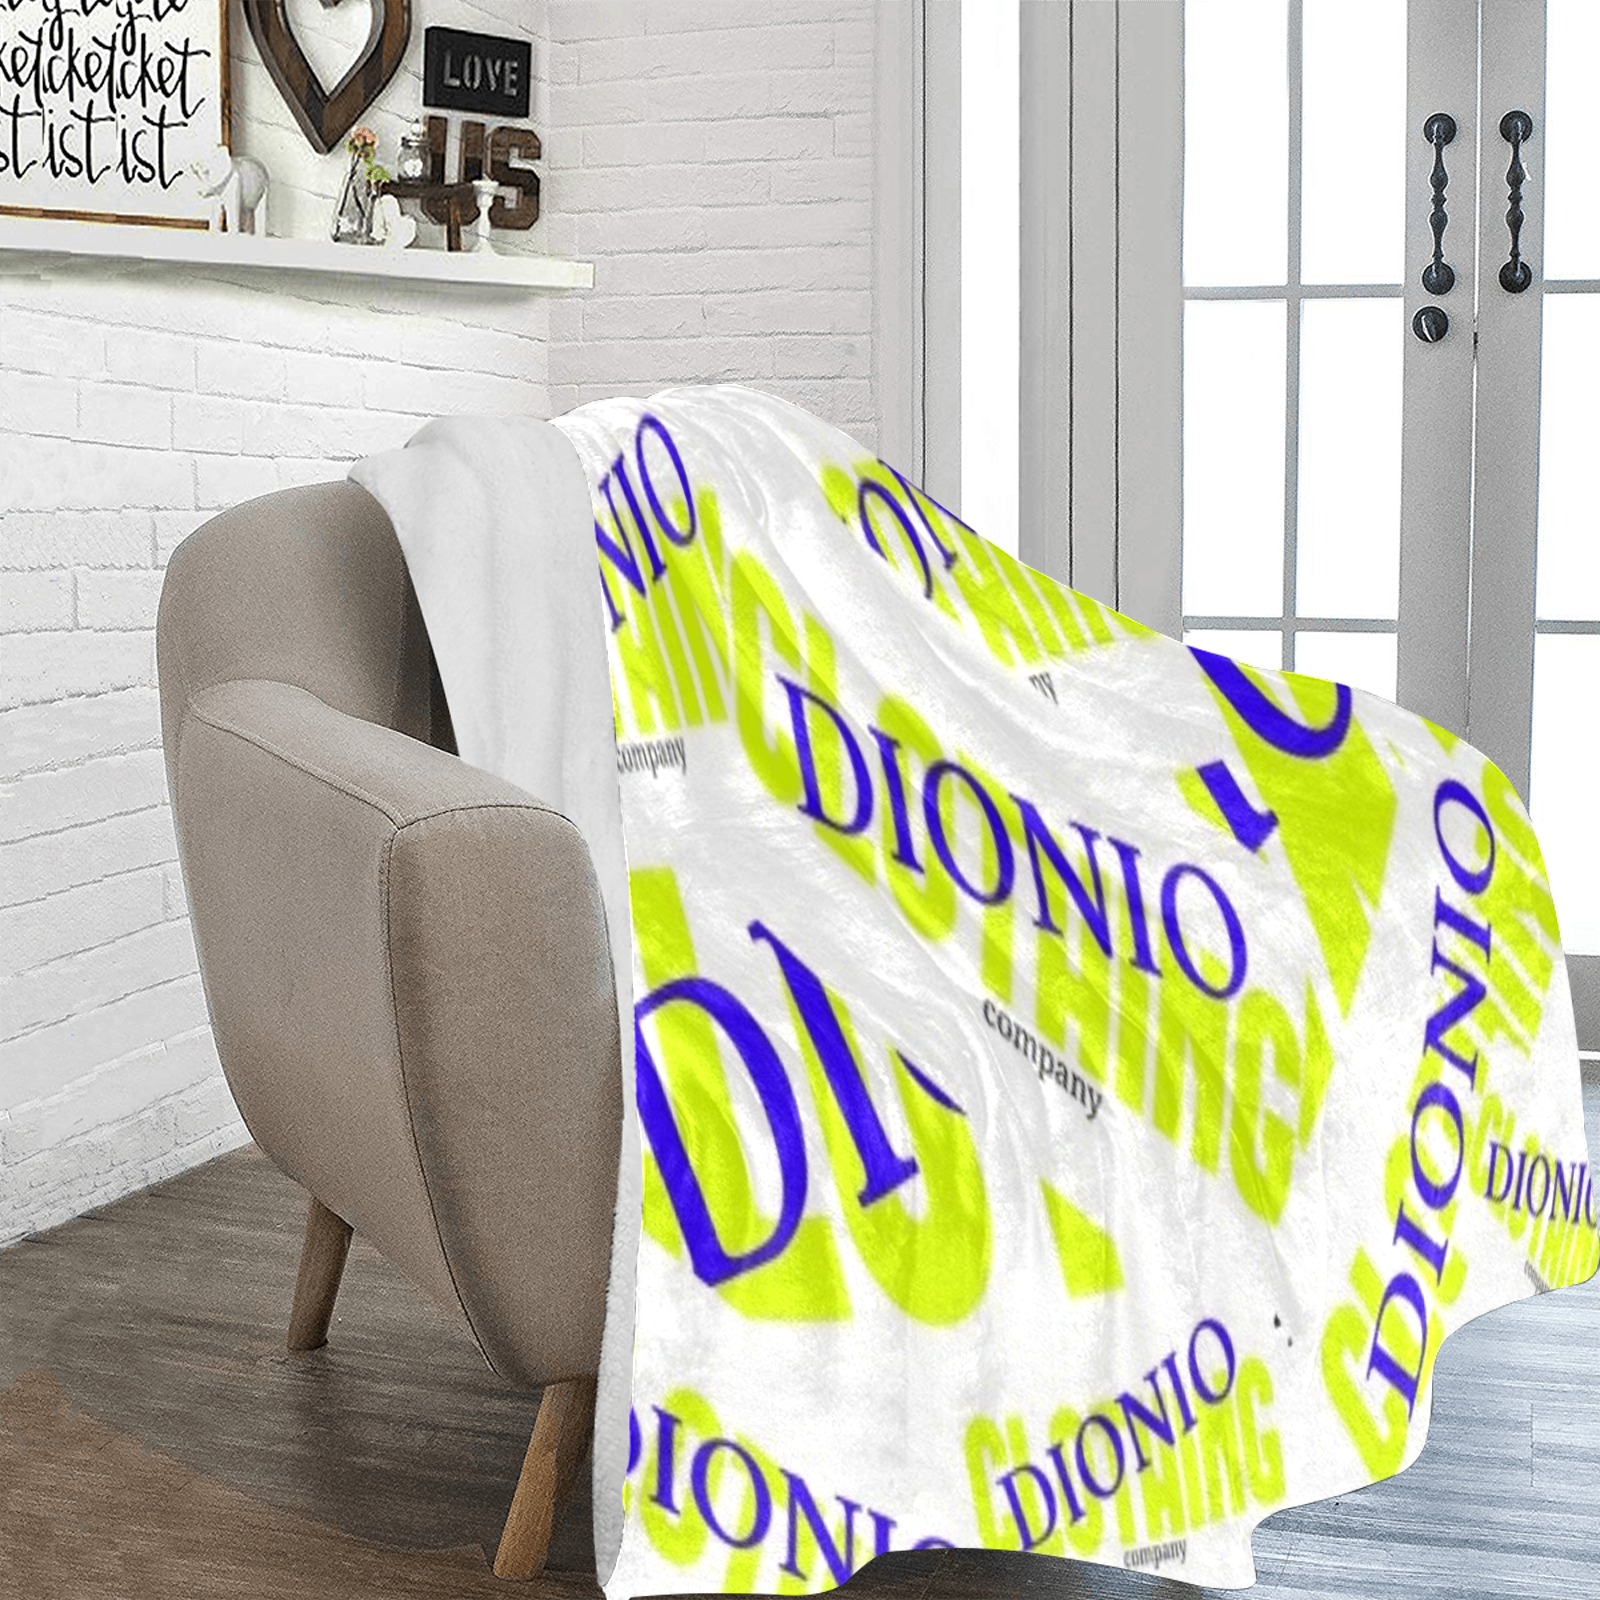 DIONIO - Dionio Company Logos Ultra soft Micro Fleece Blanket 70 X 80 Ultra-Soft Micro Fleece Blanket 70''x80''